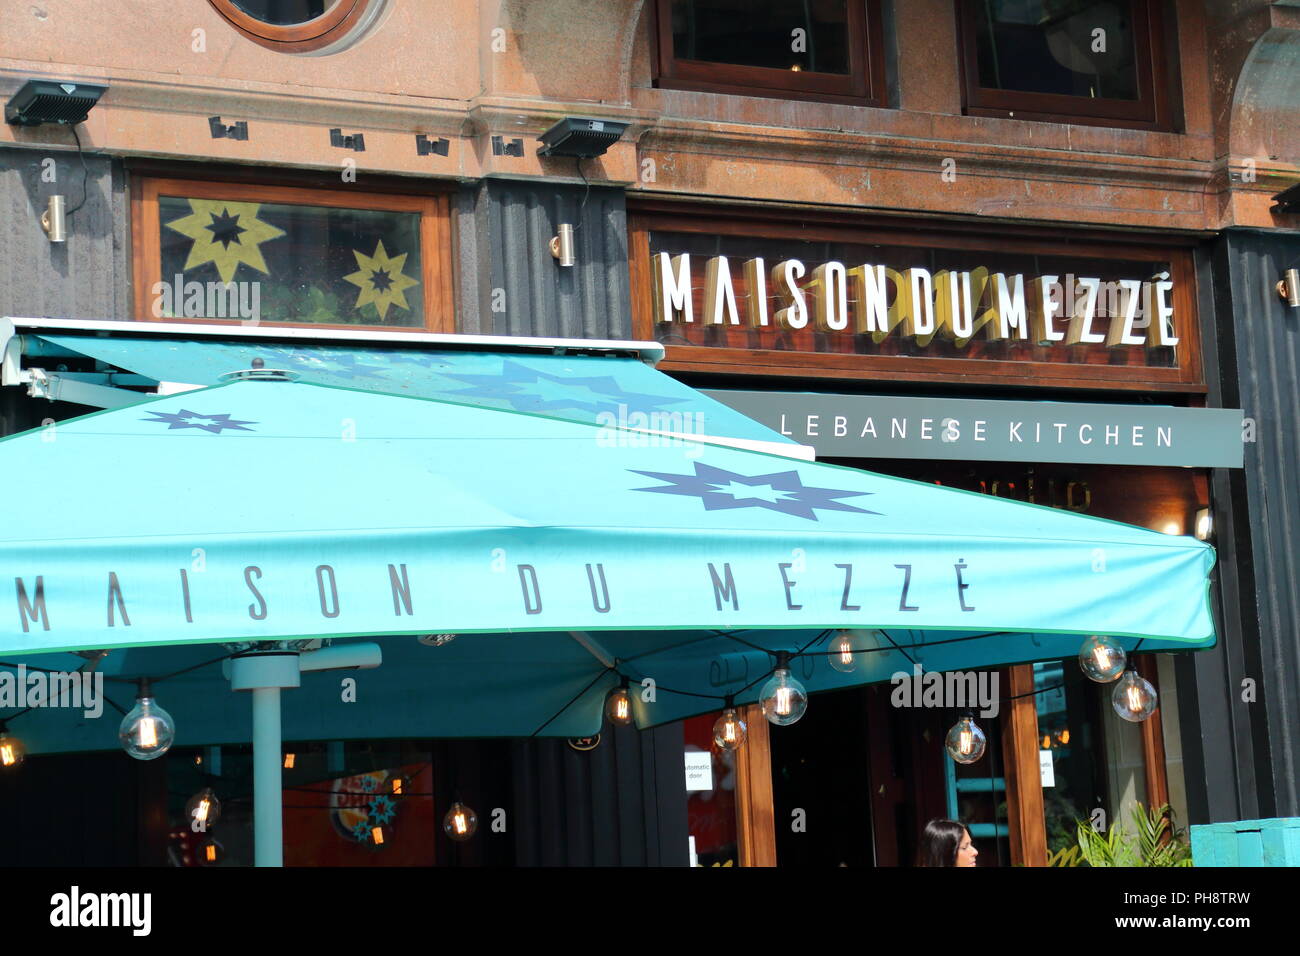 Maison du Mezze restaurant entrance at Leicester Square, London, UK Stock Photo